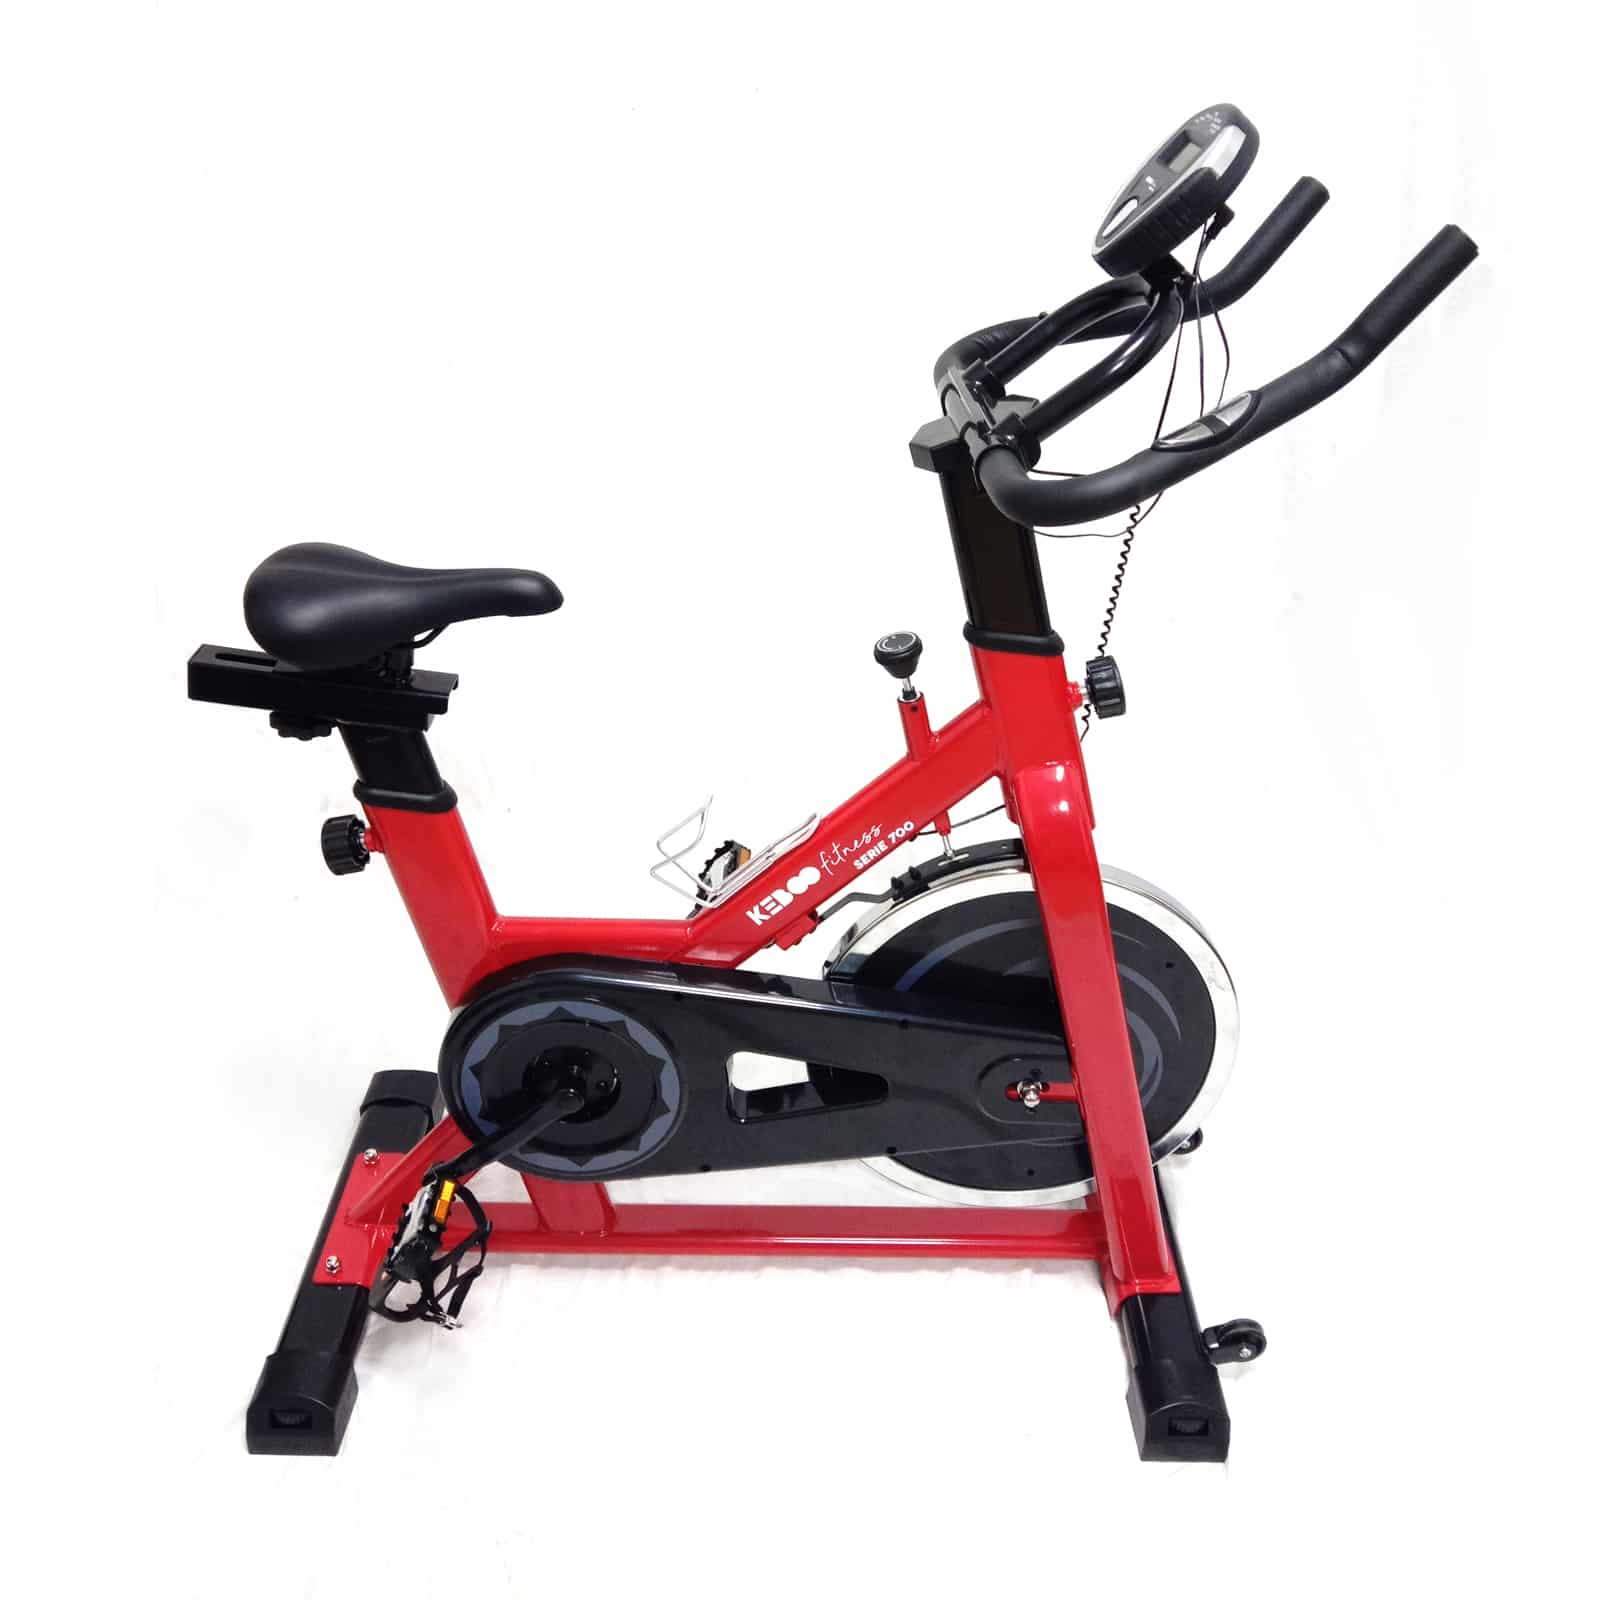 Bicicleta Ciclo Indoor Estática Keboo Serie 700 Con Volante De Inercia 15 Kg, Asiento Y Manillar - rojo - 